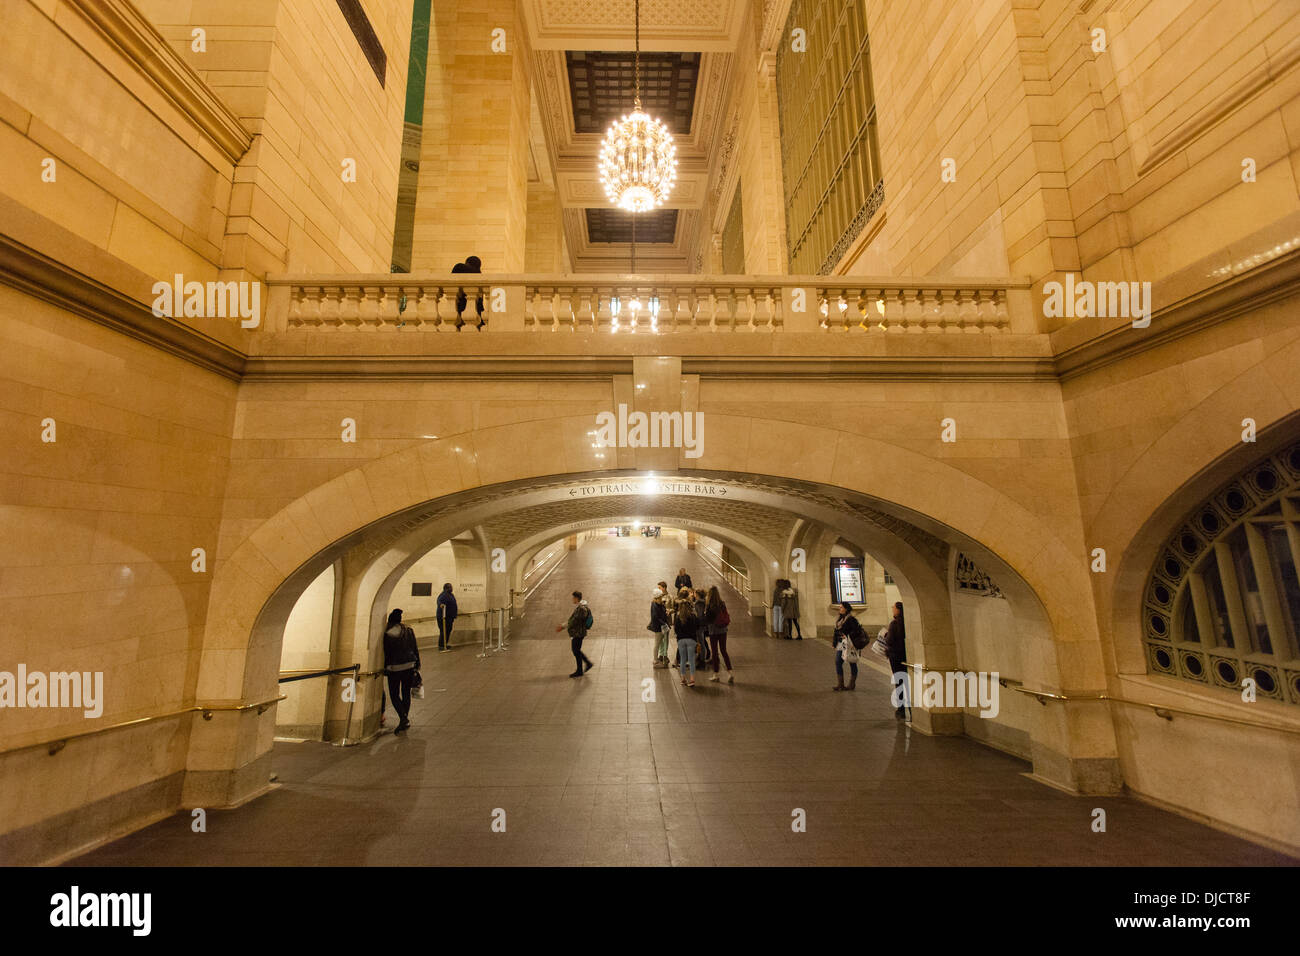 Galerie im Bahnhof grand central terminal Station Flüstern. Manhattan, New York City, Vereinigte Staaten von Amerika. Stockfoto